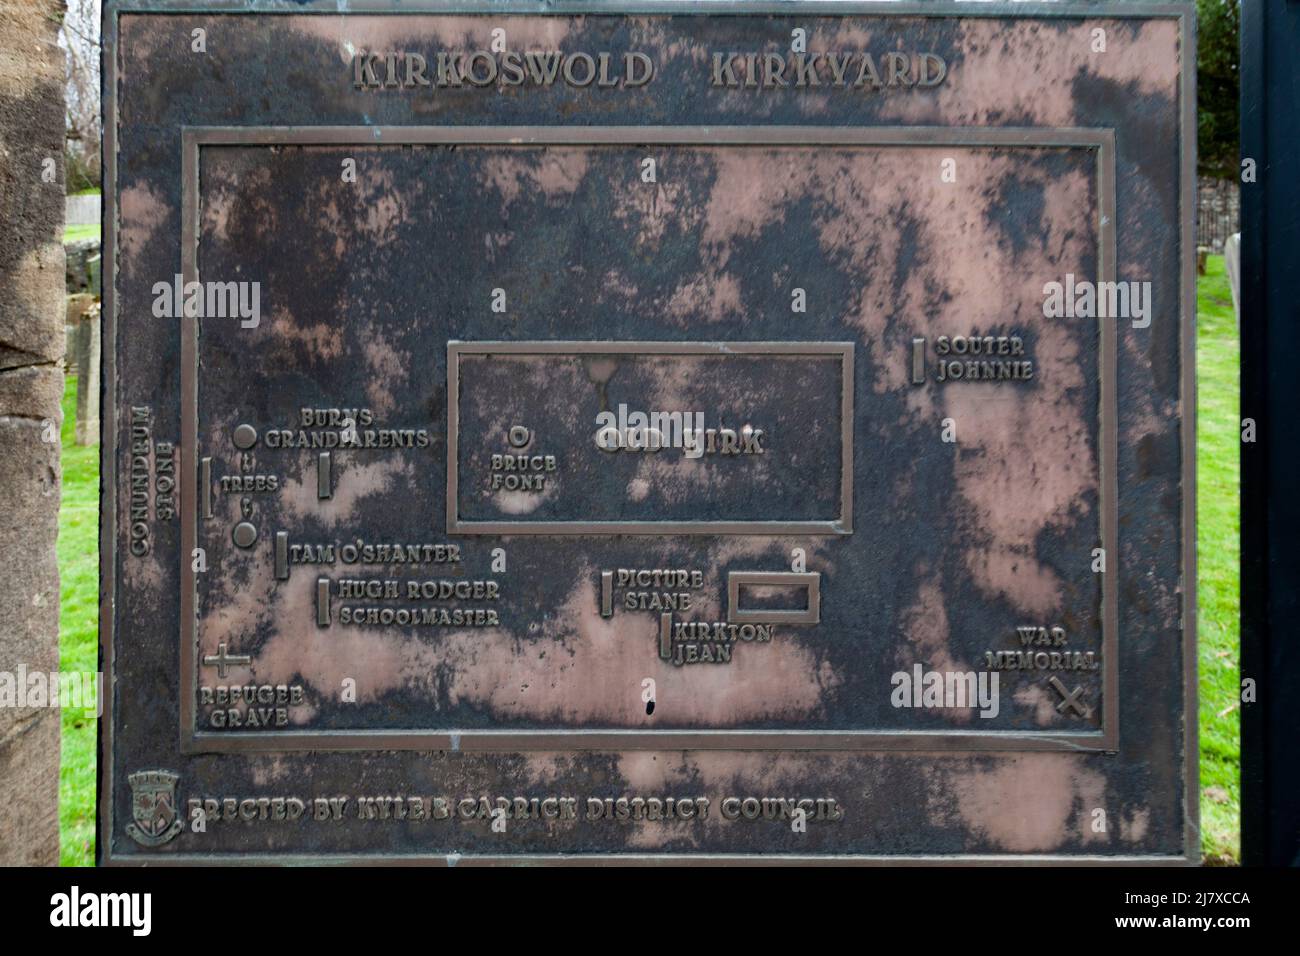 Kirkoswald, Ayrshire, Scotlamd, Reino Unido: Una placa que muestra los lugares de entierro de personajes famosos inmortalizados en el poema de Robert Burns Tam 0'Shanter Foto de stock